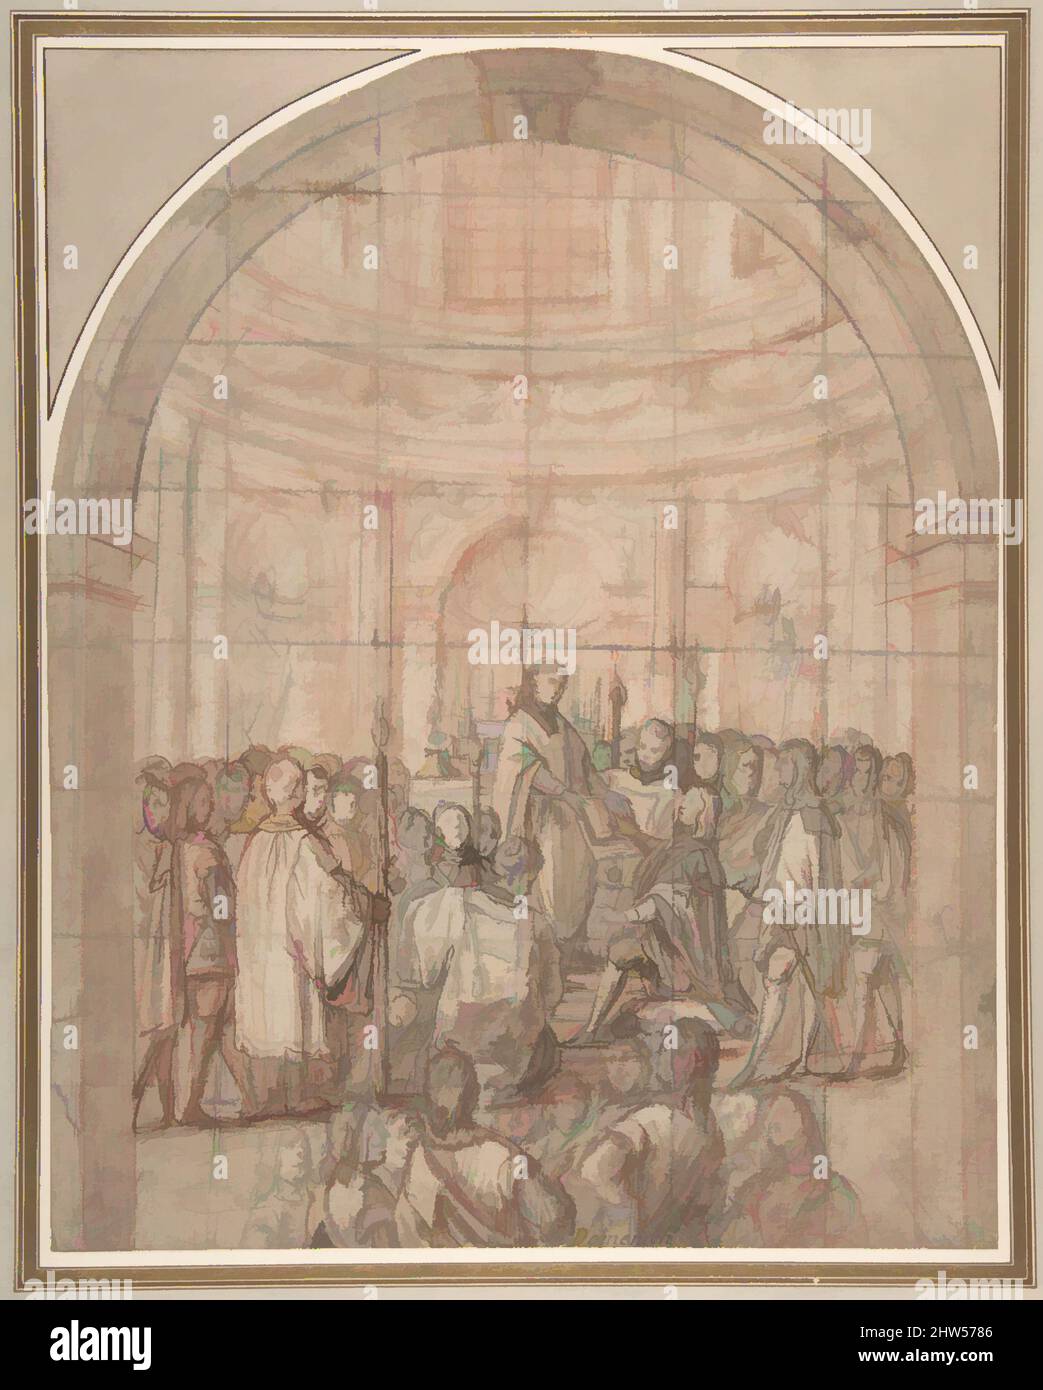 Art inspiré par la prestation de serment d'un Chevalier de l'ordre toscan de Saint Stephen (ou Malte), 1600–1620, encre de plume et brune, lavage brun à la brosse, sur la craie rouge et noire. Carré de craie noire, 12-9/16 x 9-15/16 po (31,9 x 25,3 cm), dessins, anonymes, italiens, 17th Century (Florentine, Œuvres classiques modernisées par Artotop avec une touche de modernité. Formes, couleur et valeur, impact visuel accrocheur sur l'art émotions par la liberté d'œuvres d'art d'une manière contemporaine. Un message intemporel qui cherche une nouvelle direction créative. Artistes qui se tournent vers le support numérique et créent le NFT Artotop Banque D'Images